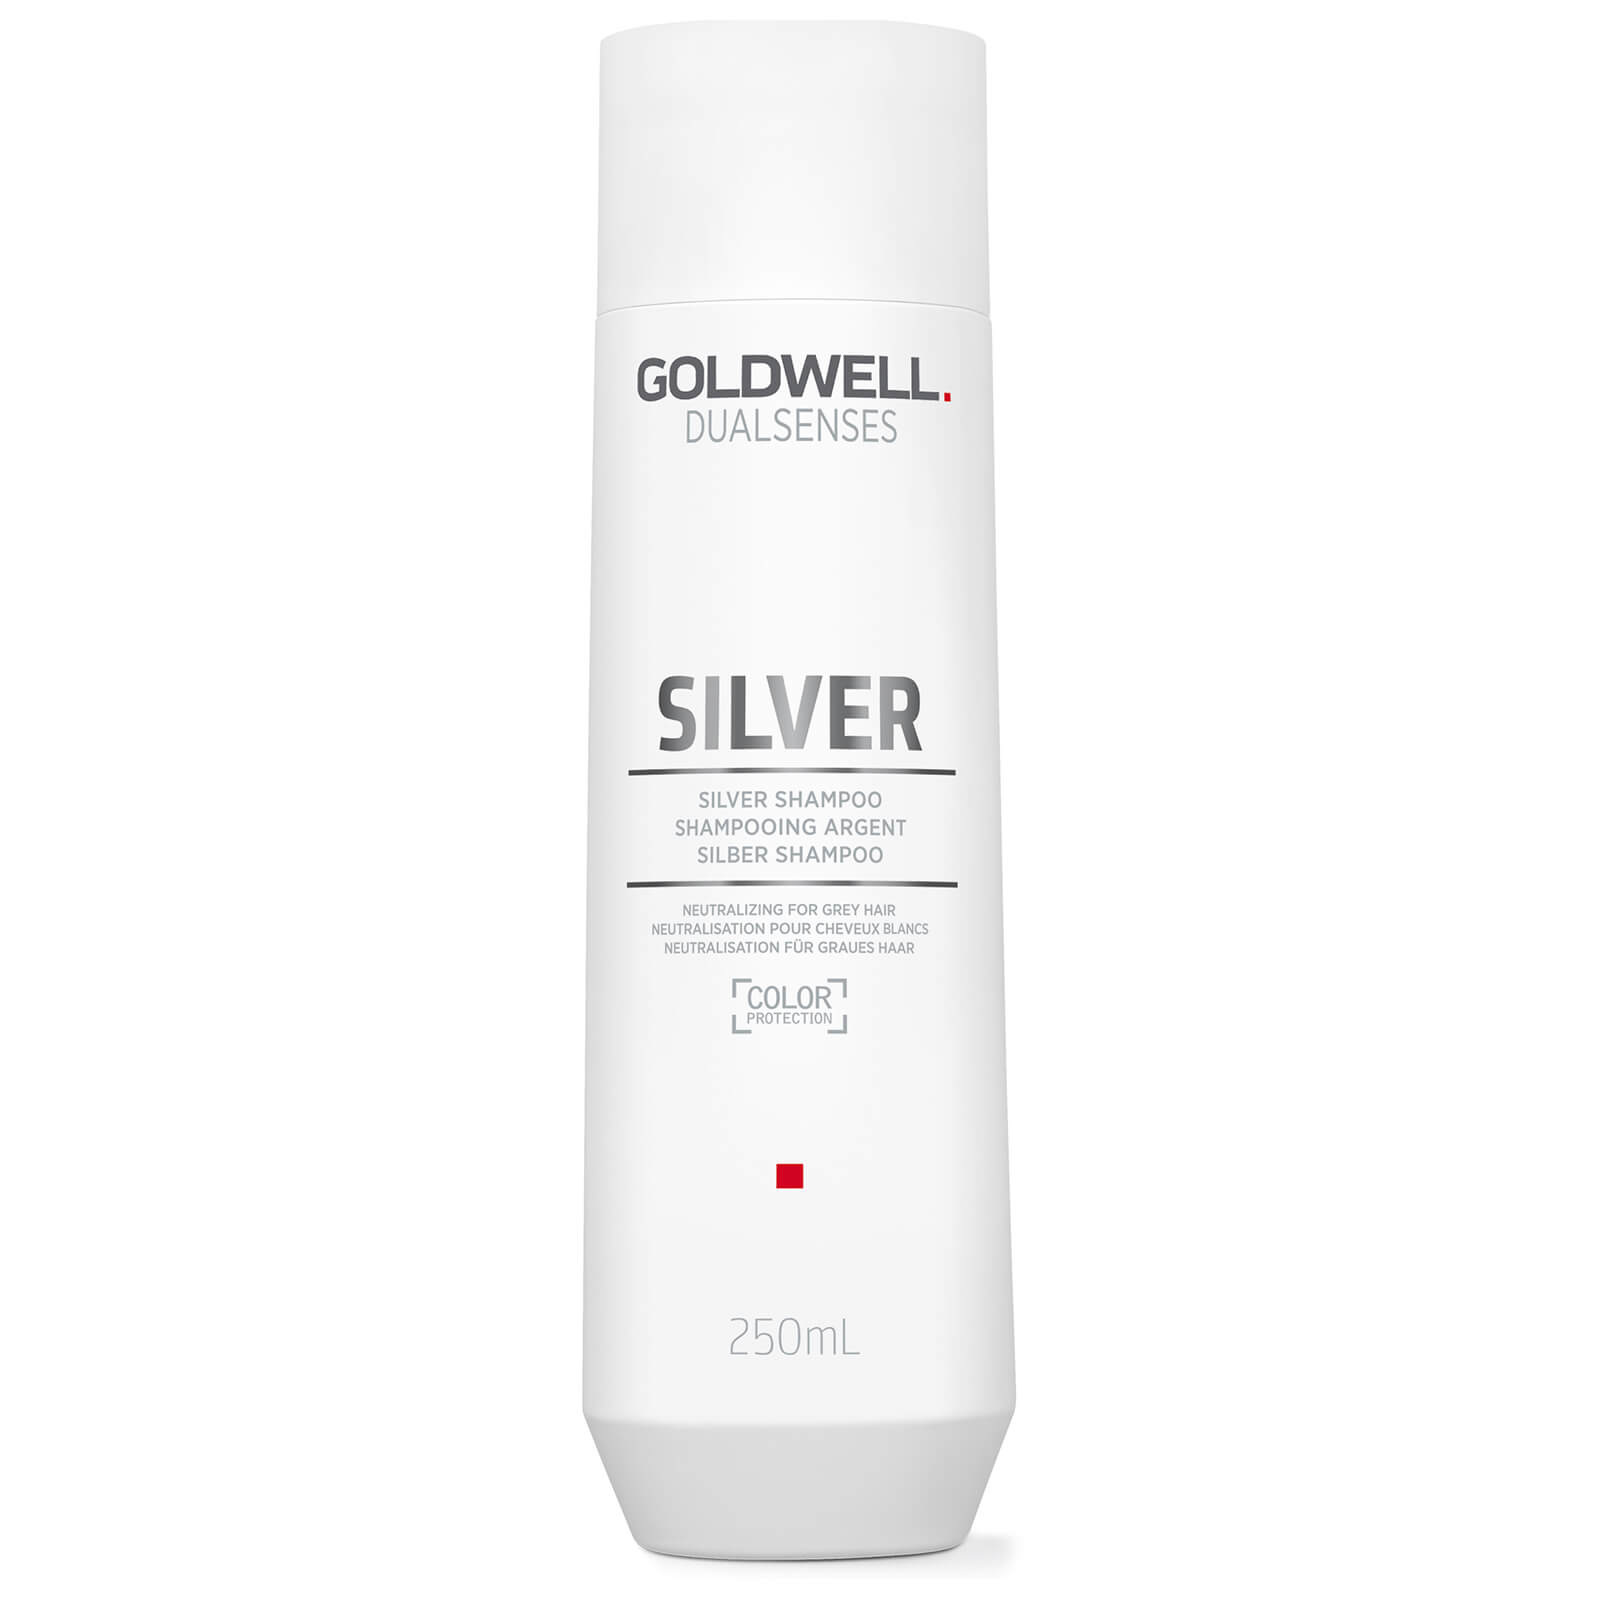 Goldwell Silver Shampoo 250ml - Hype